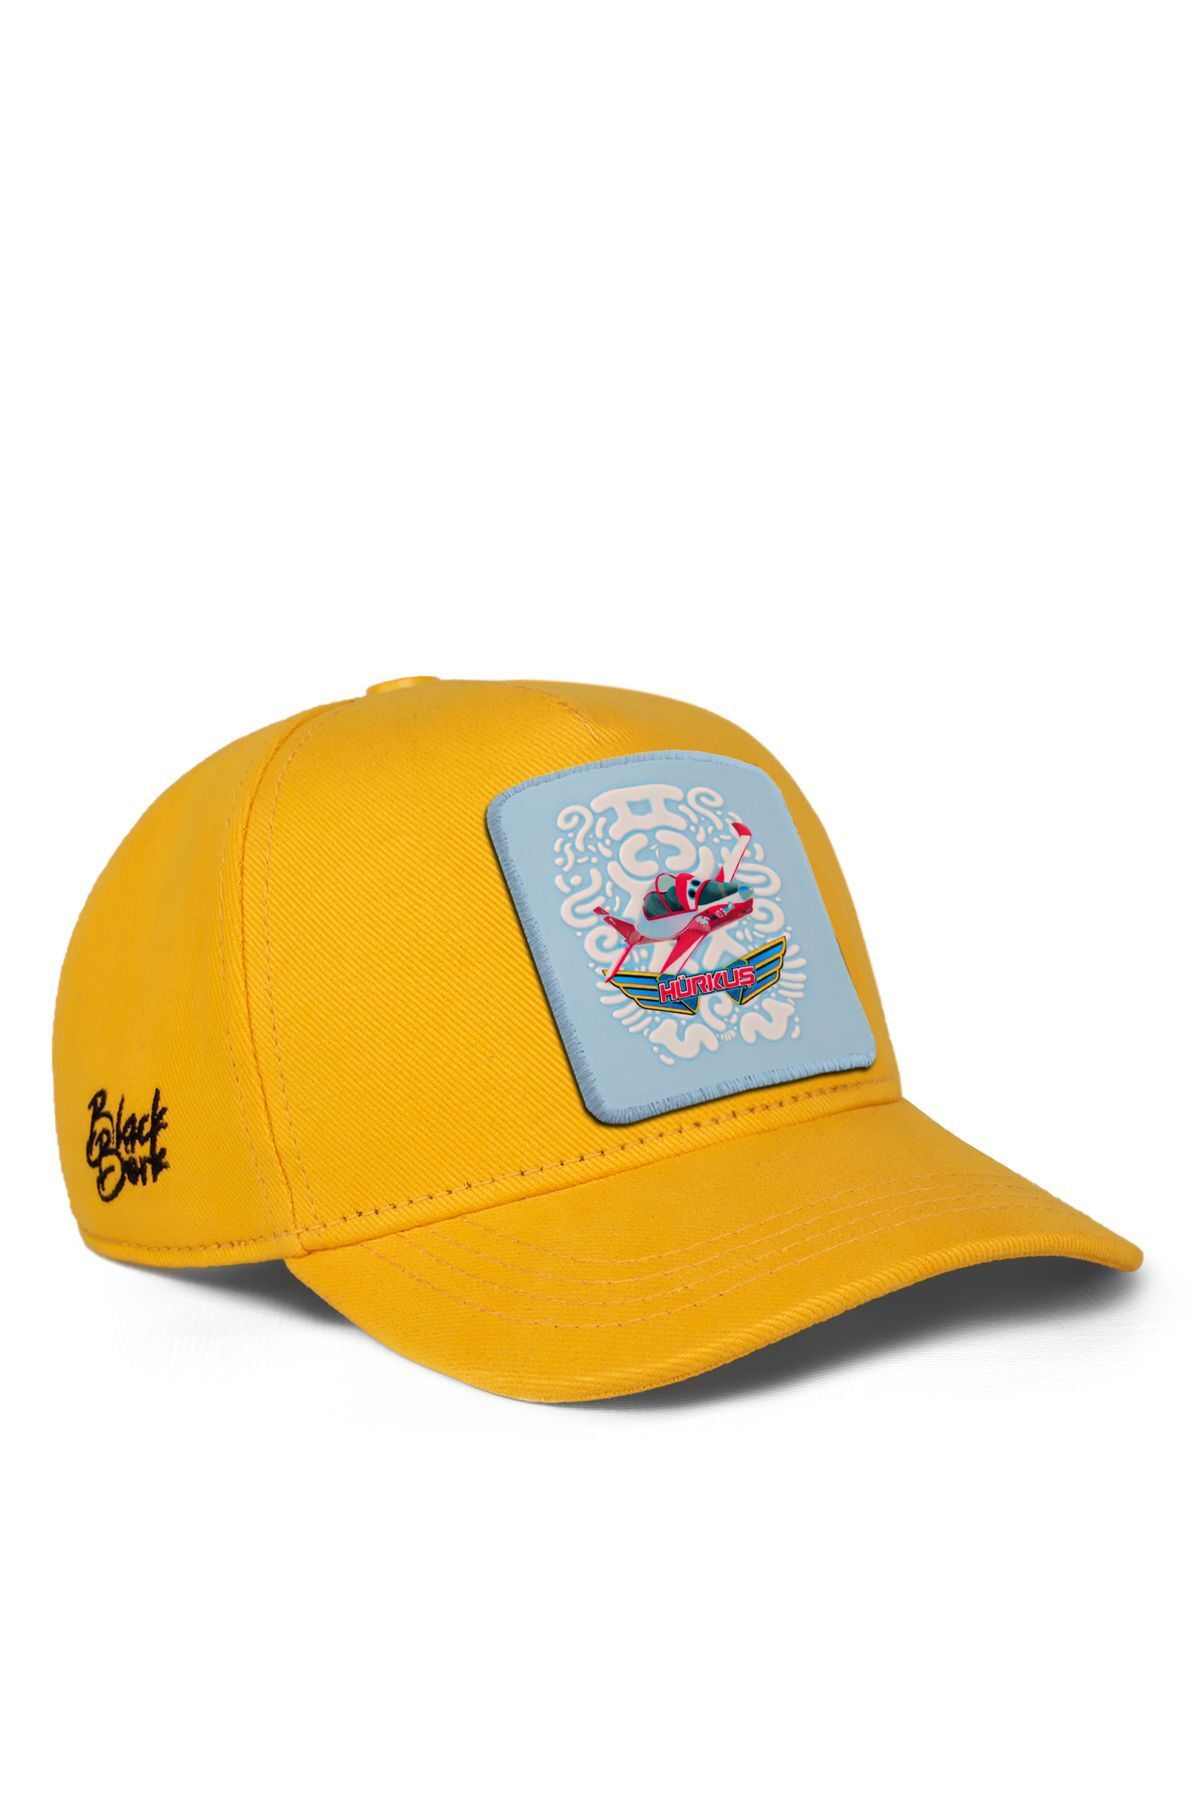 BlackBörk V1 Baseball Bulut Hürkuş Lisanlı Sarı Çocuk Şapka